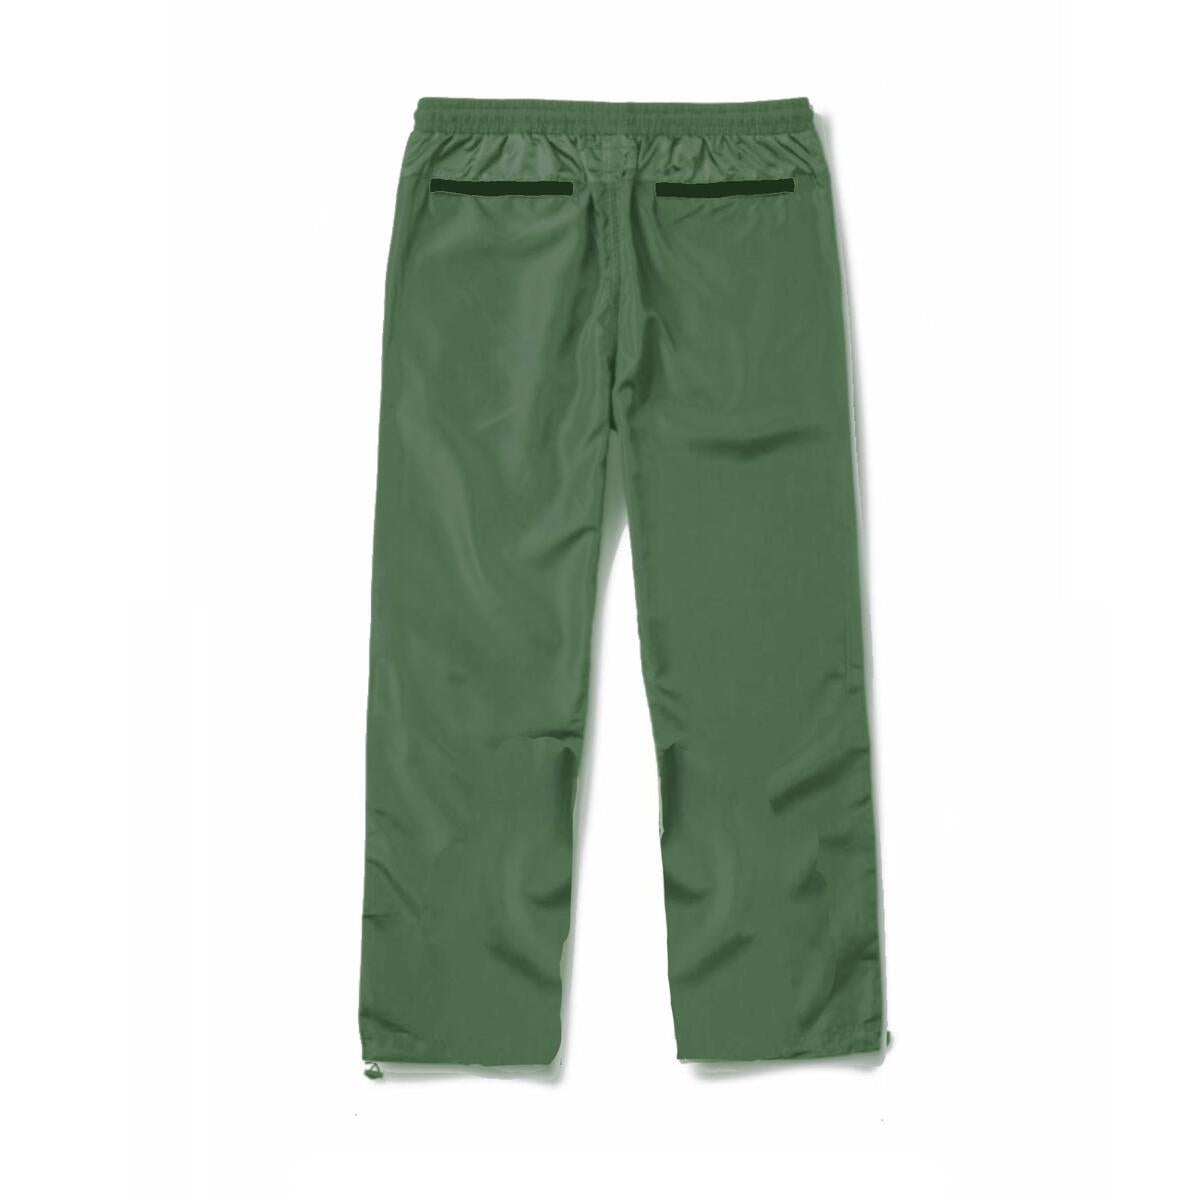 Windbreaker Cargo Pants (Green)